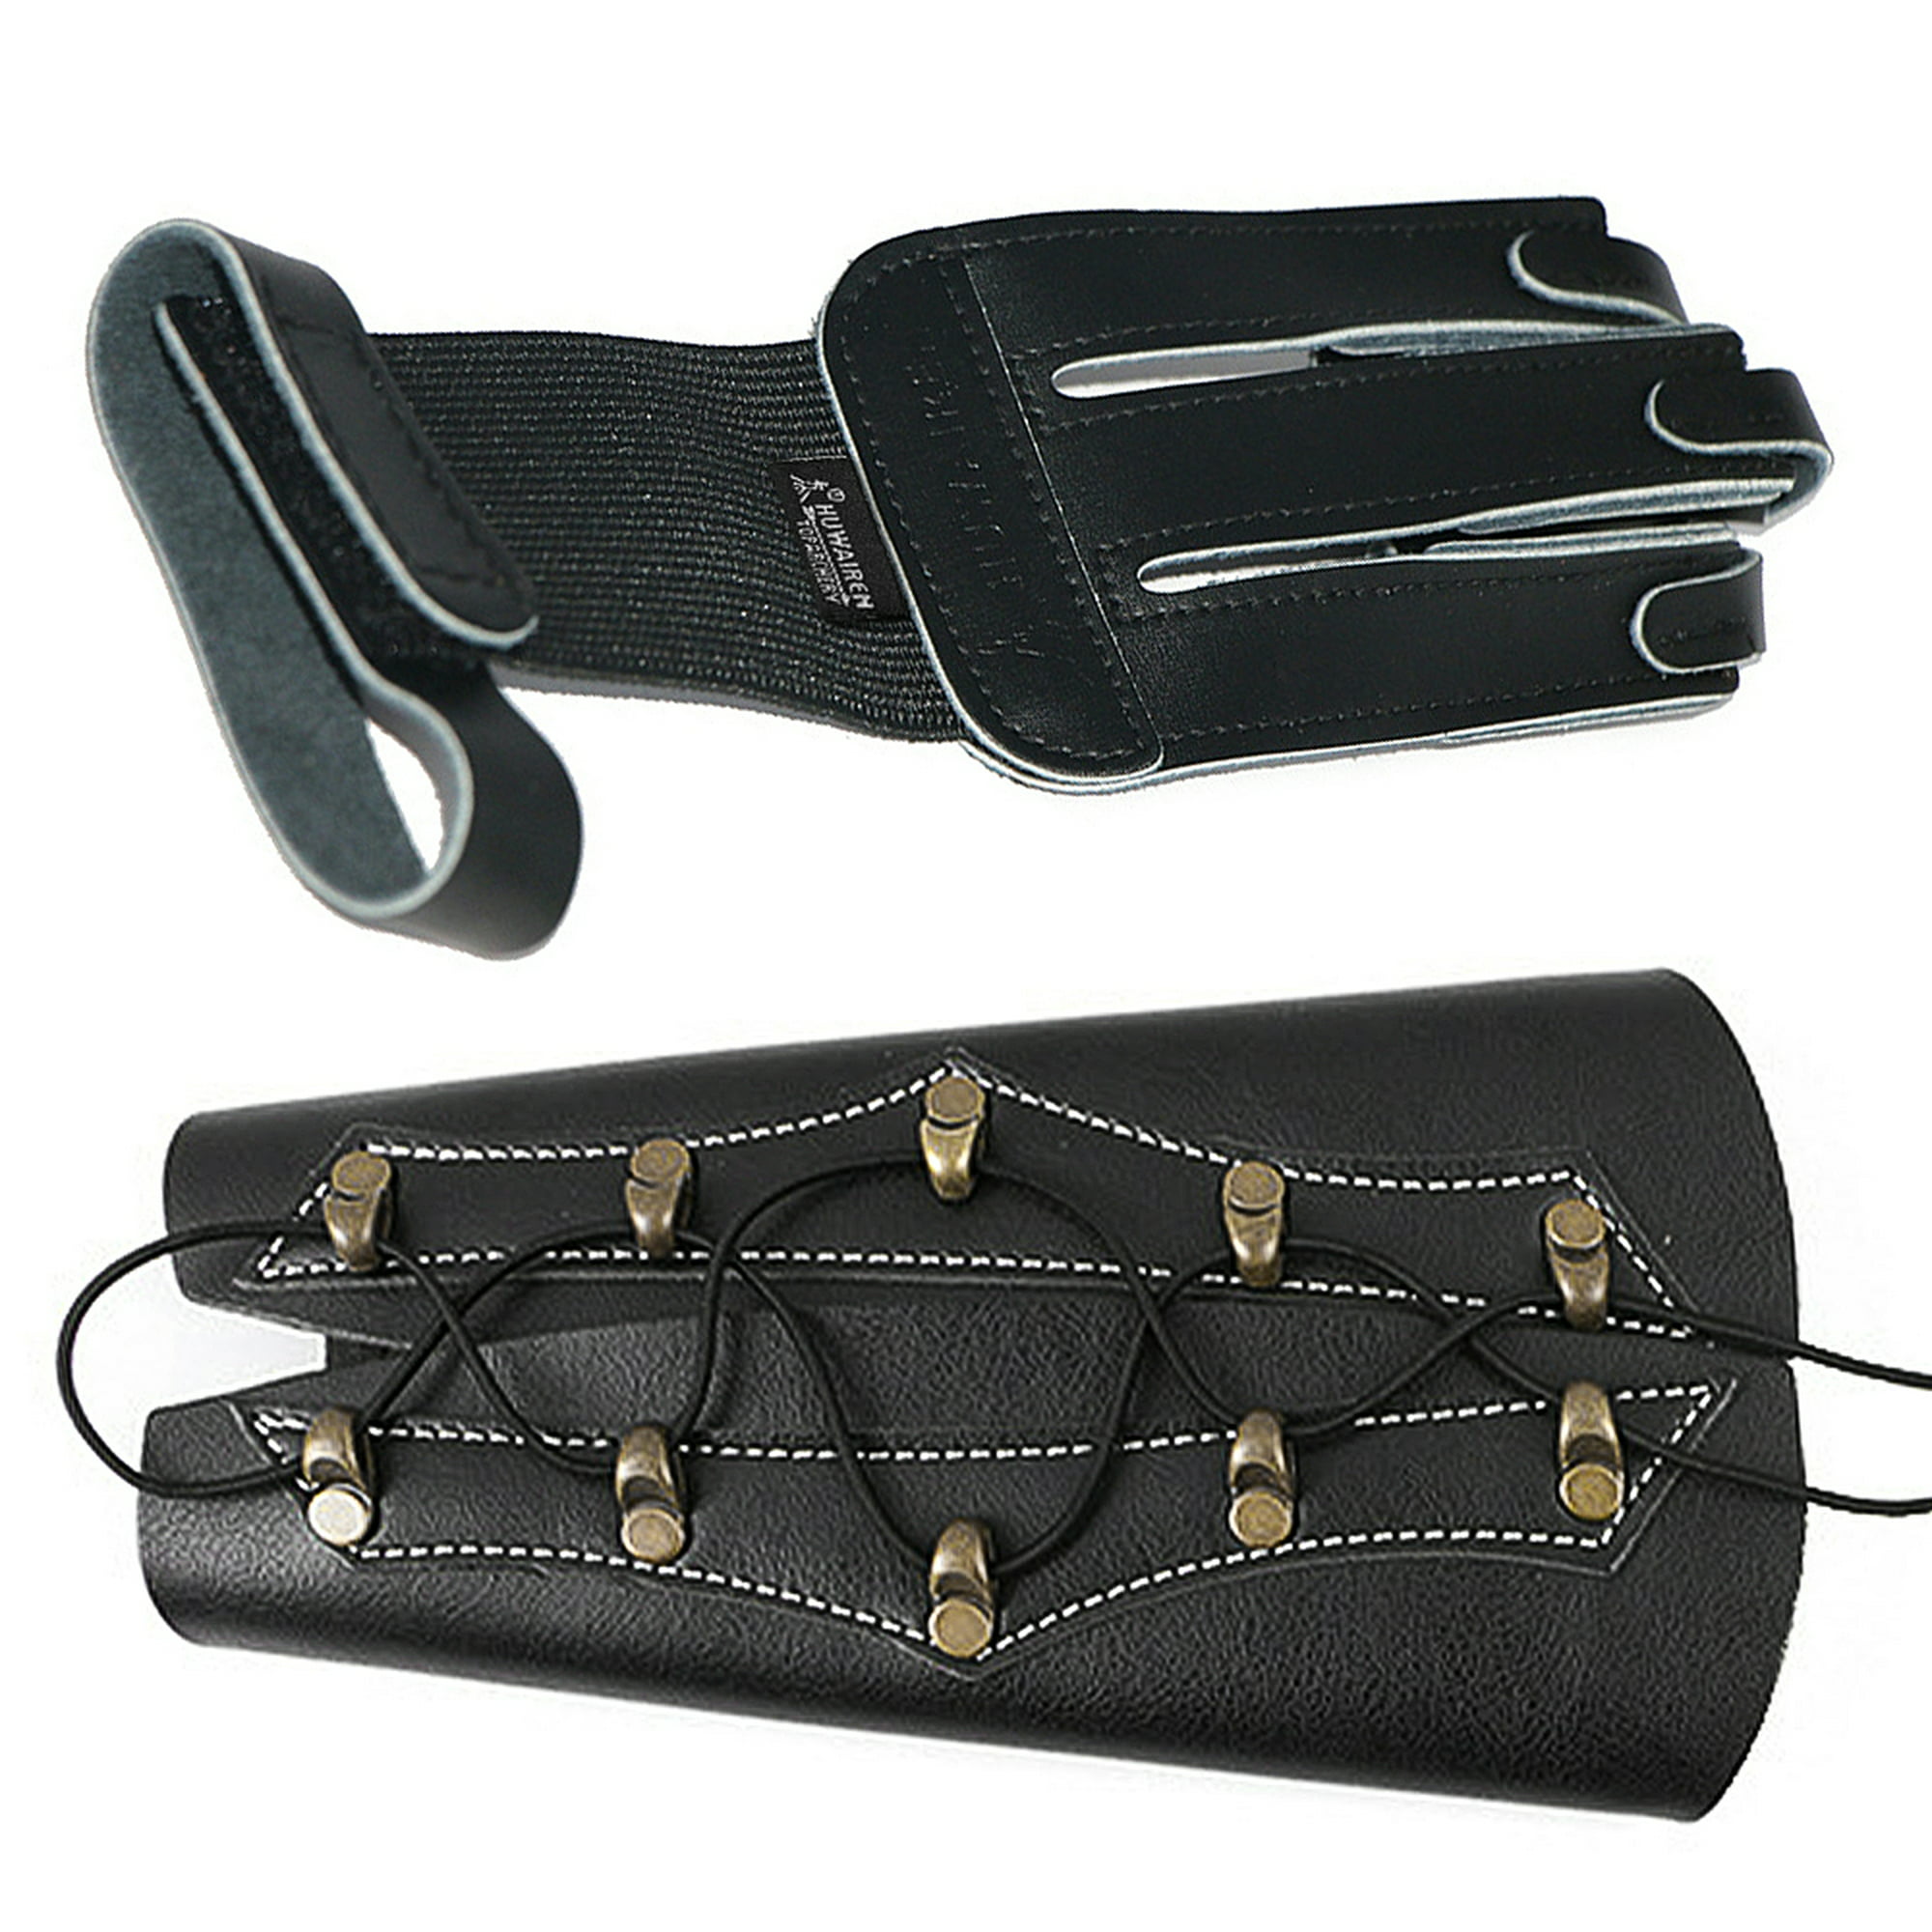 SX641 Black Sports Double Shoulder Brace Support Strap Wrap Belt